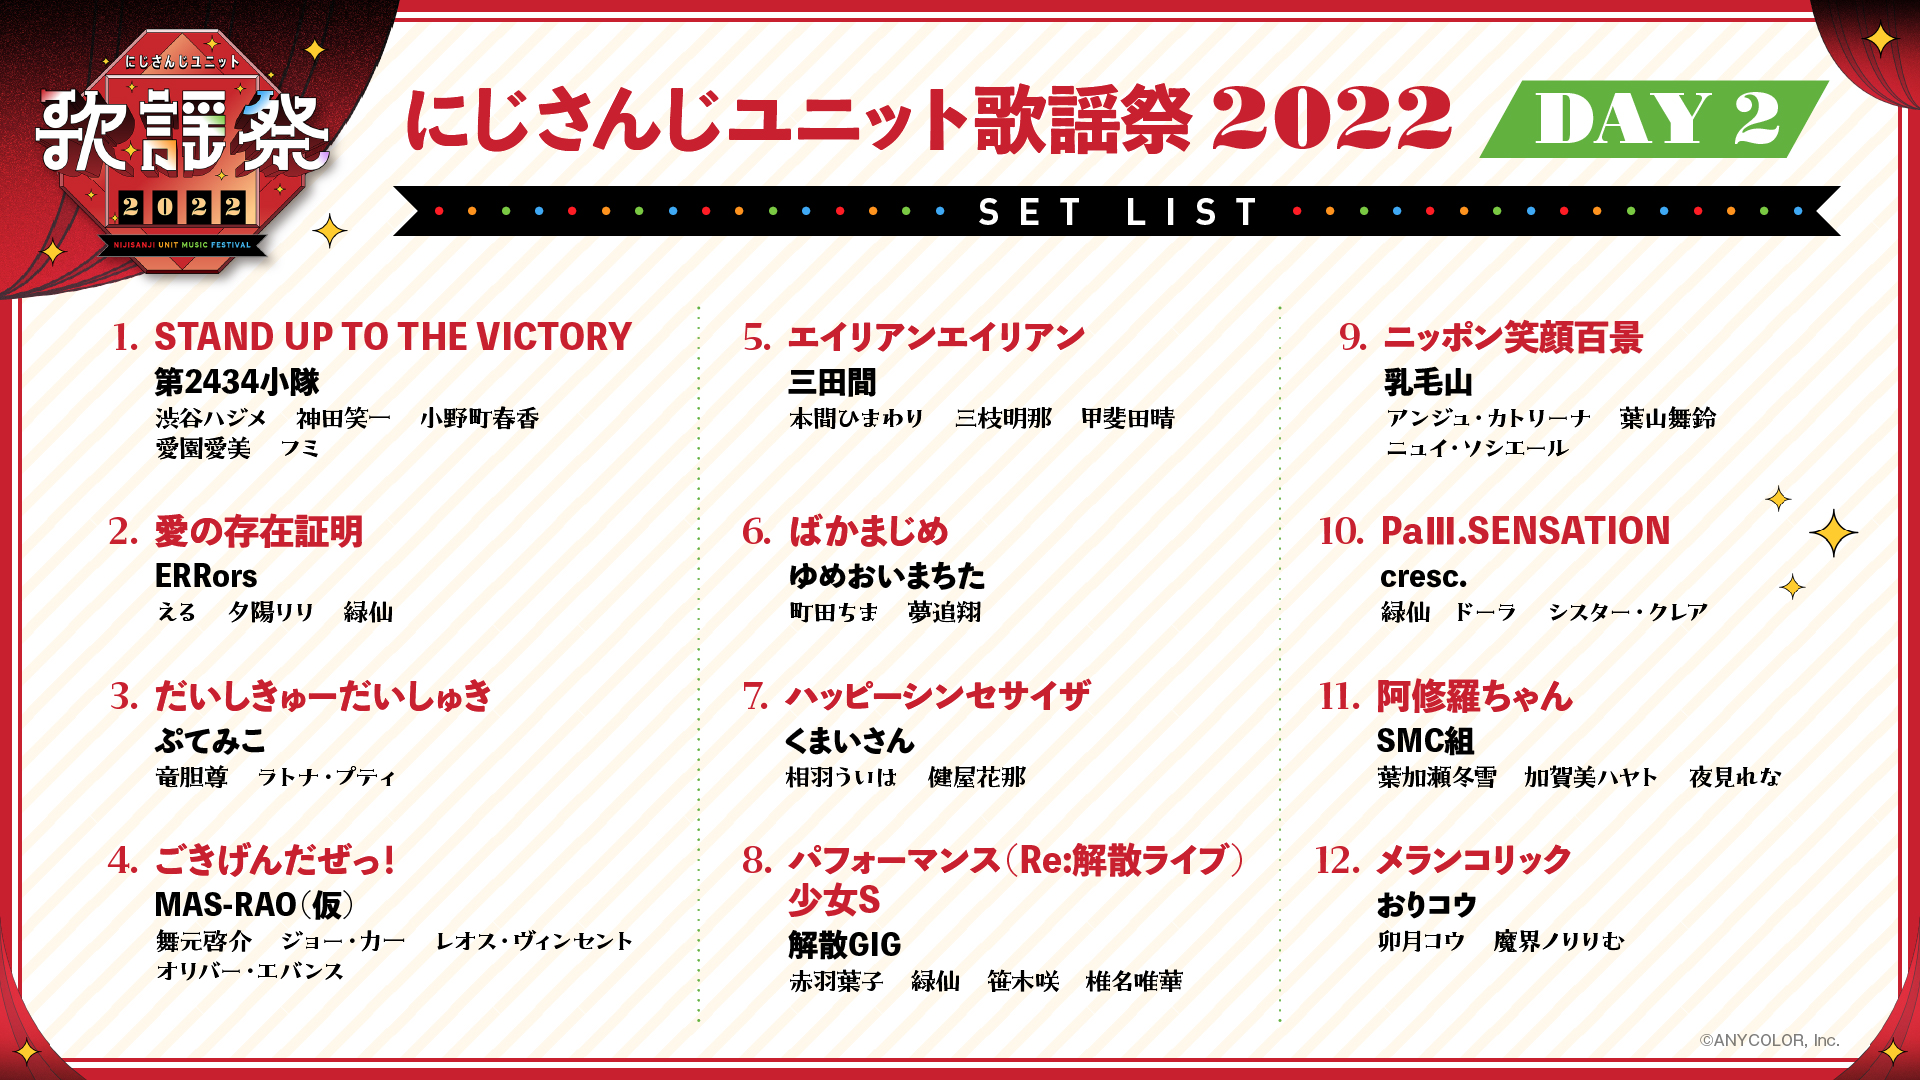 にじさんじユニット歌謡祭2022セットリスト DAY2-1